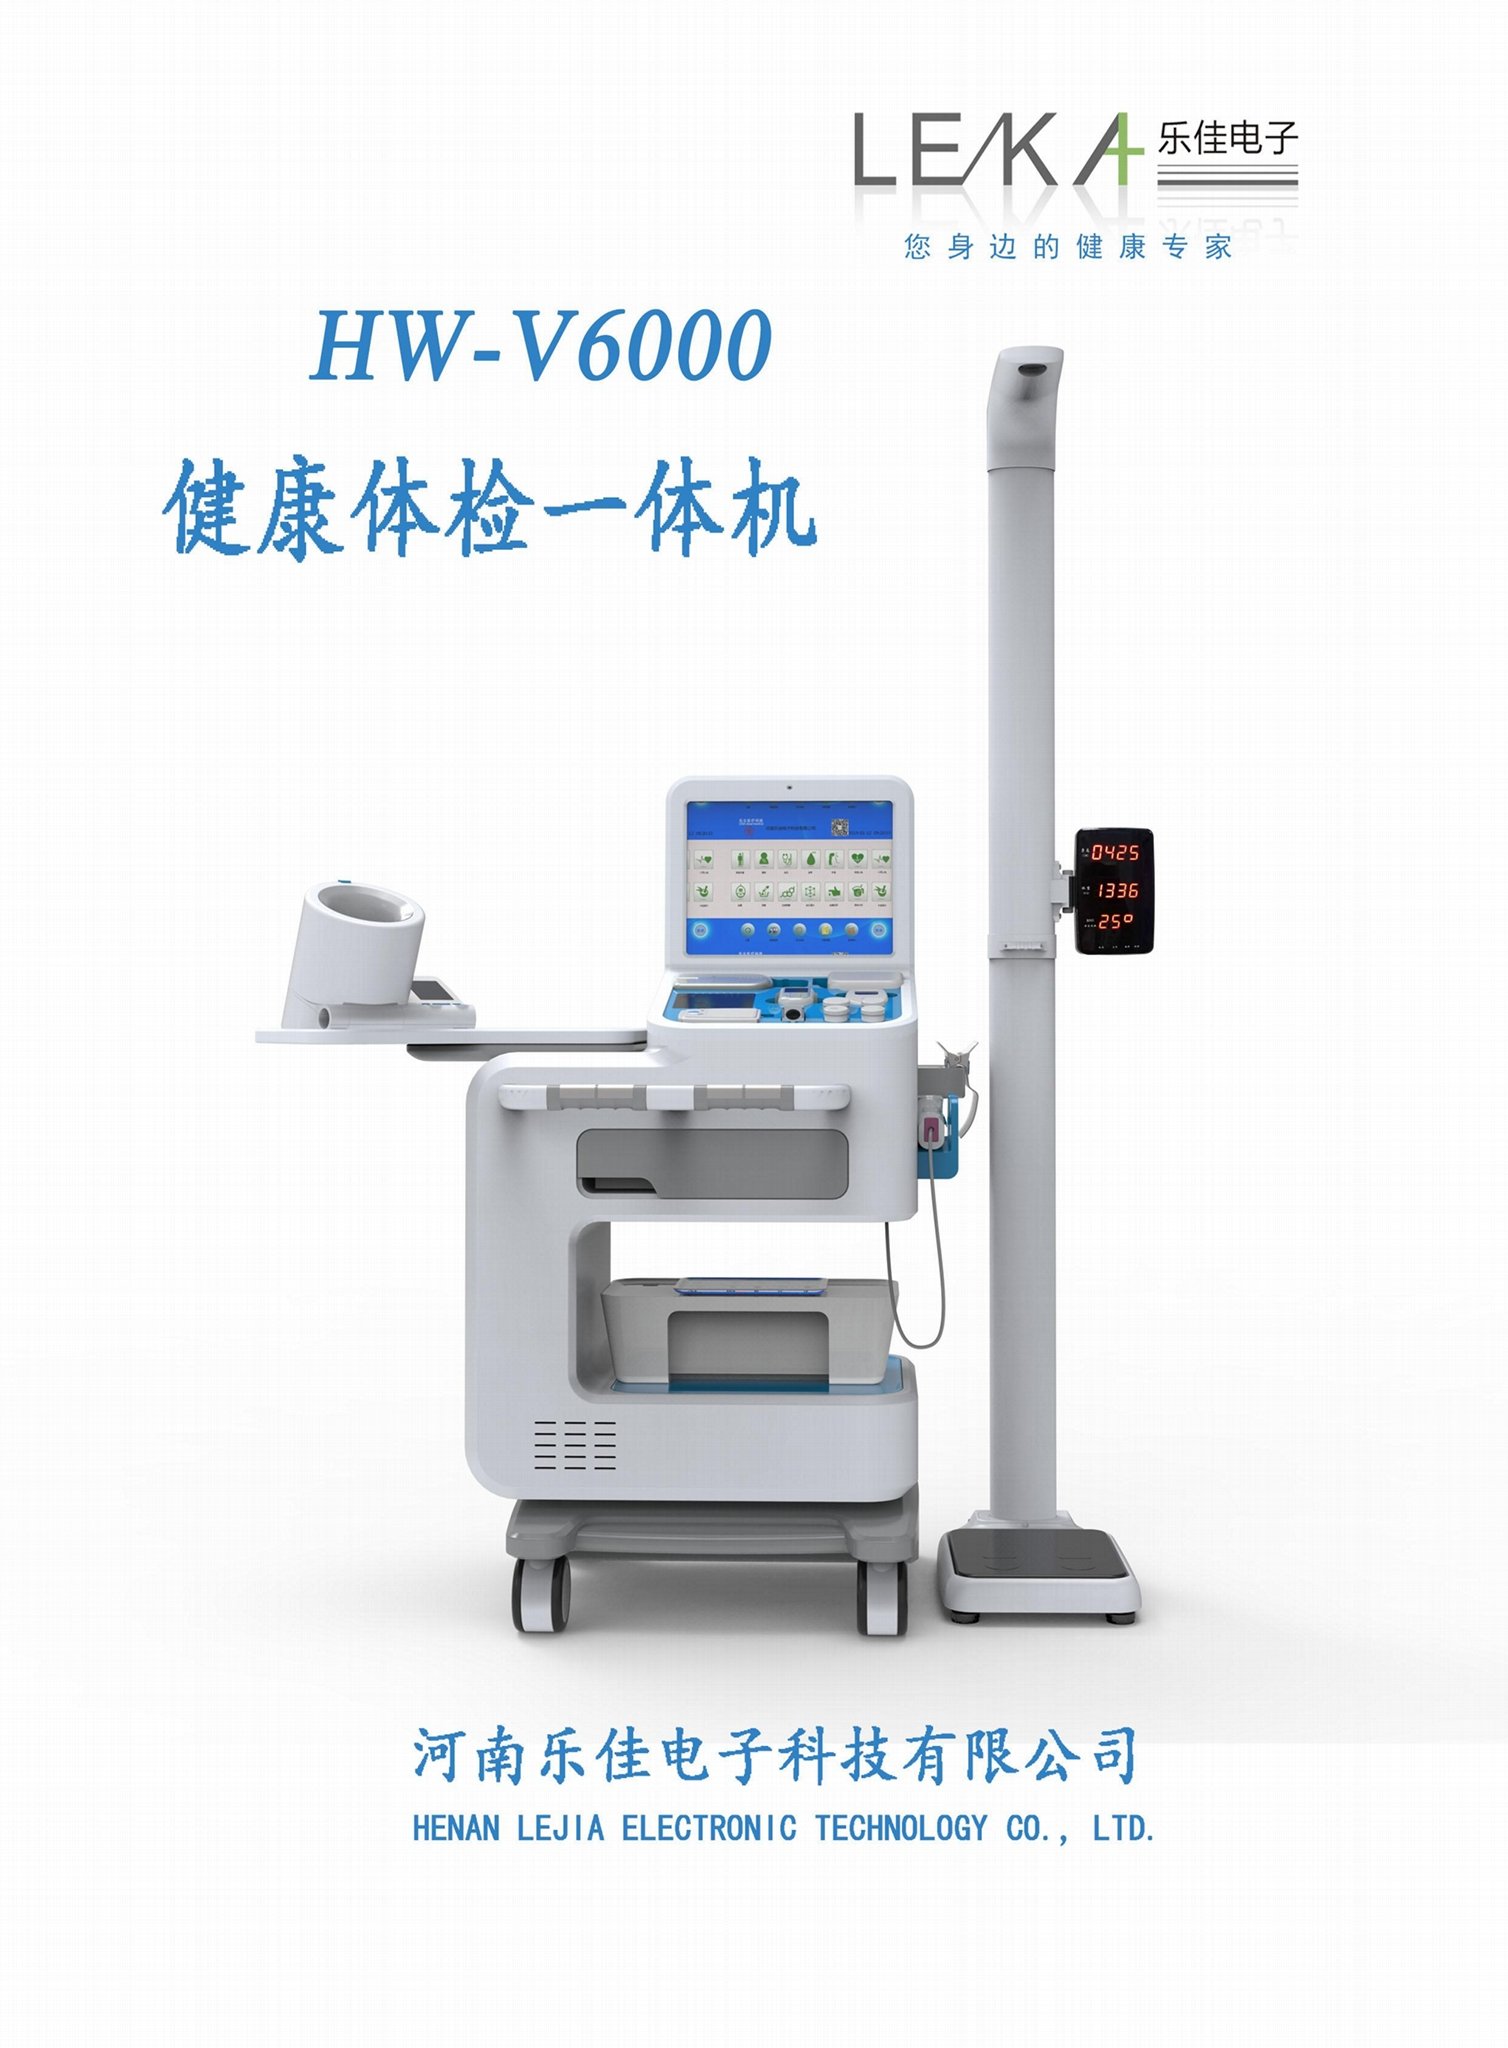 Ultrasonic electronic body scale HW-600 2